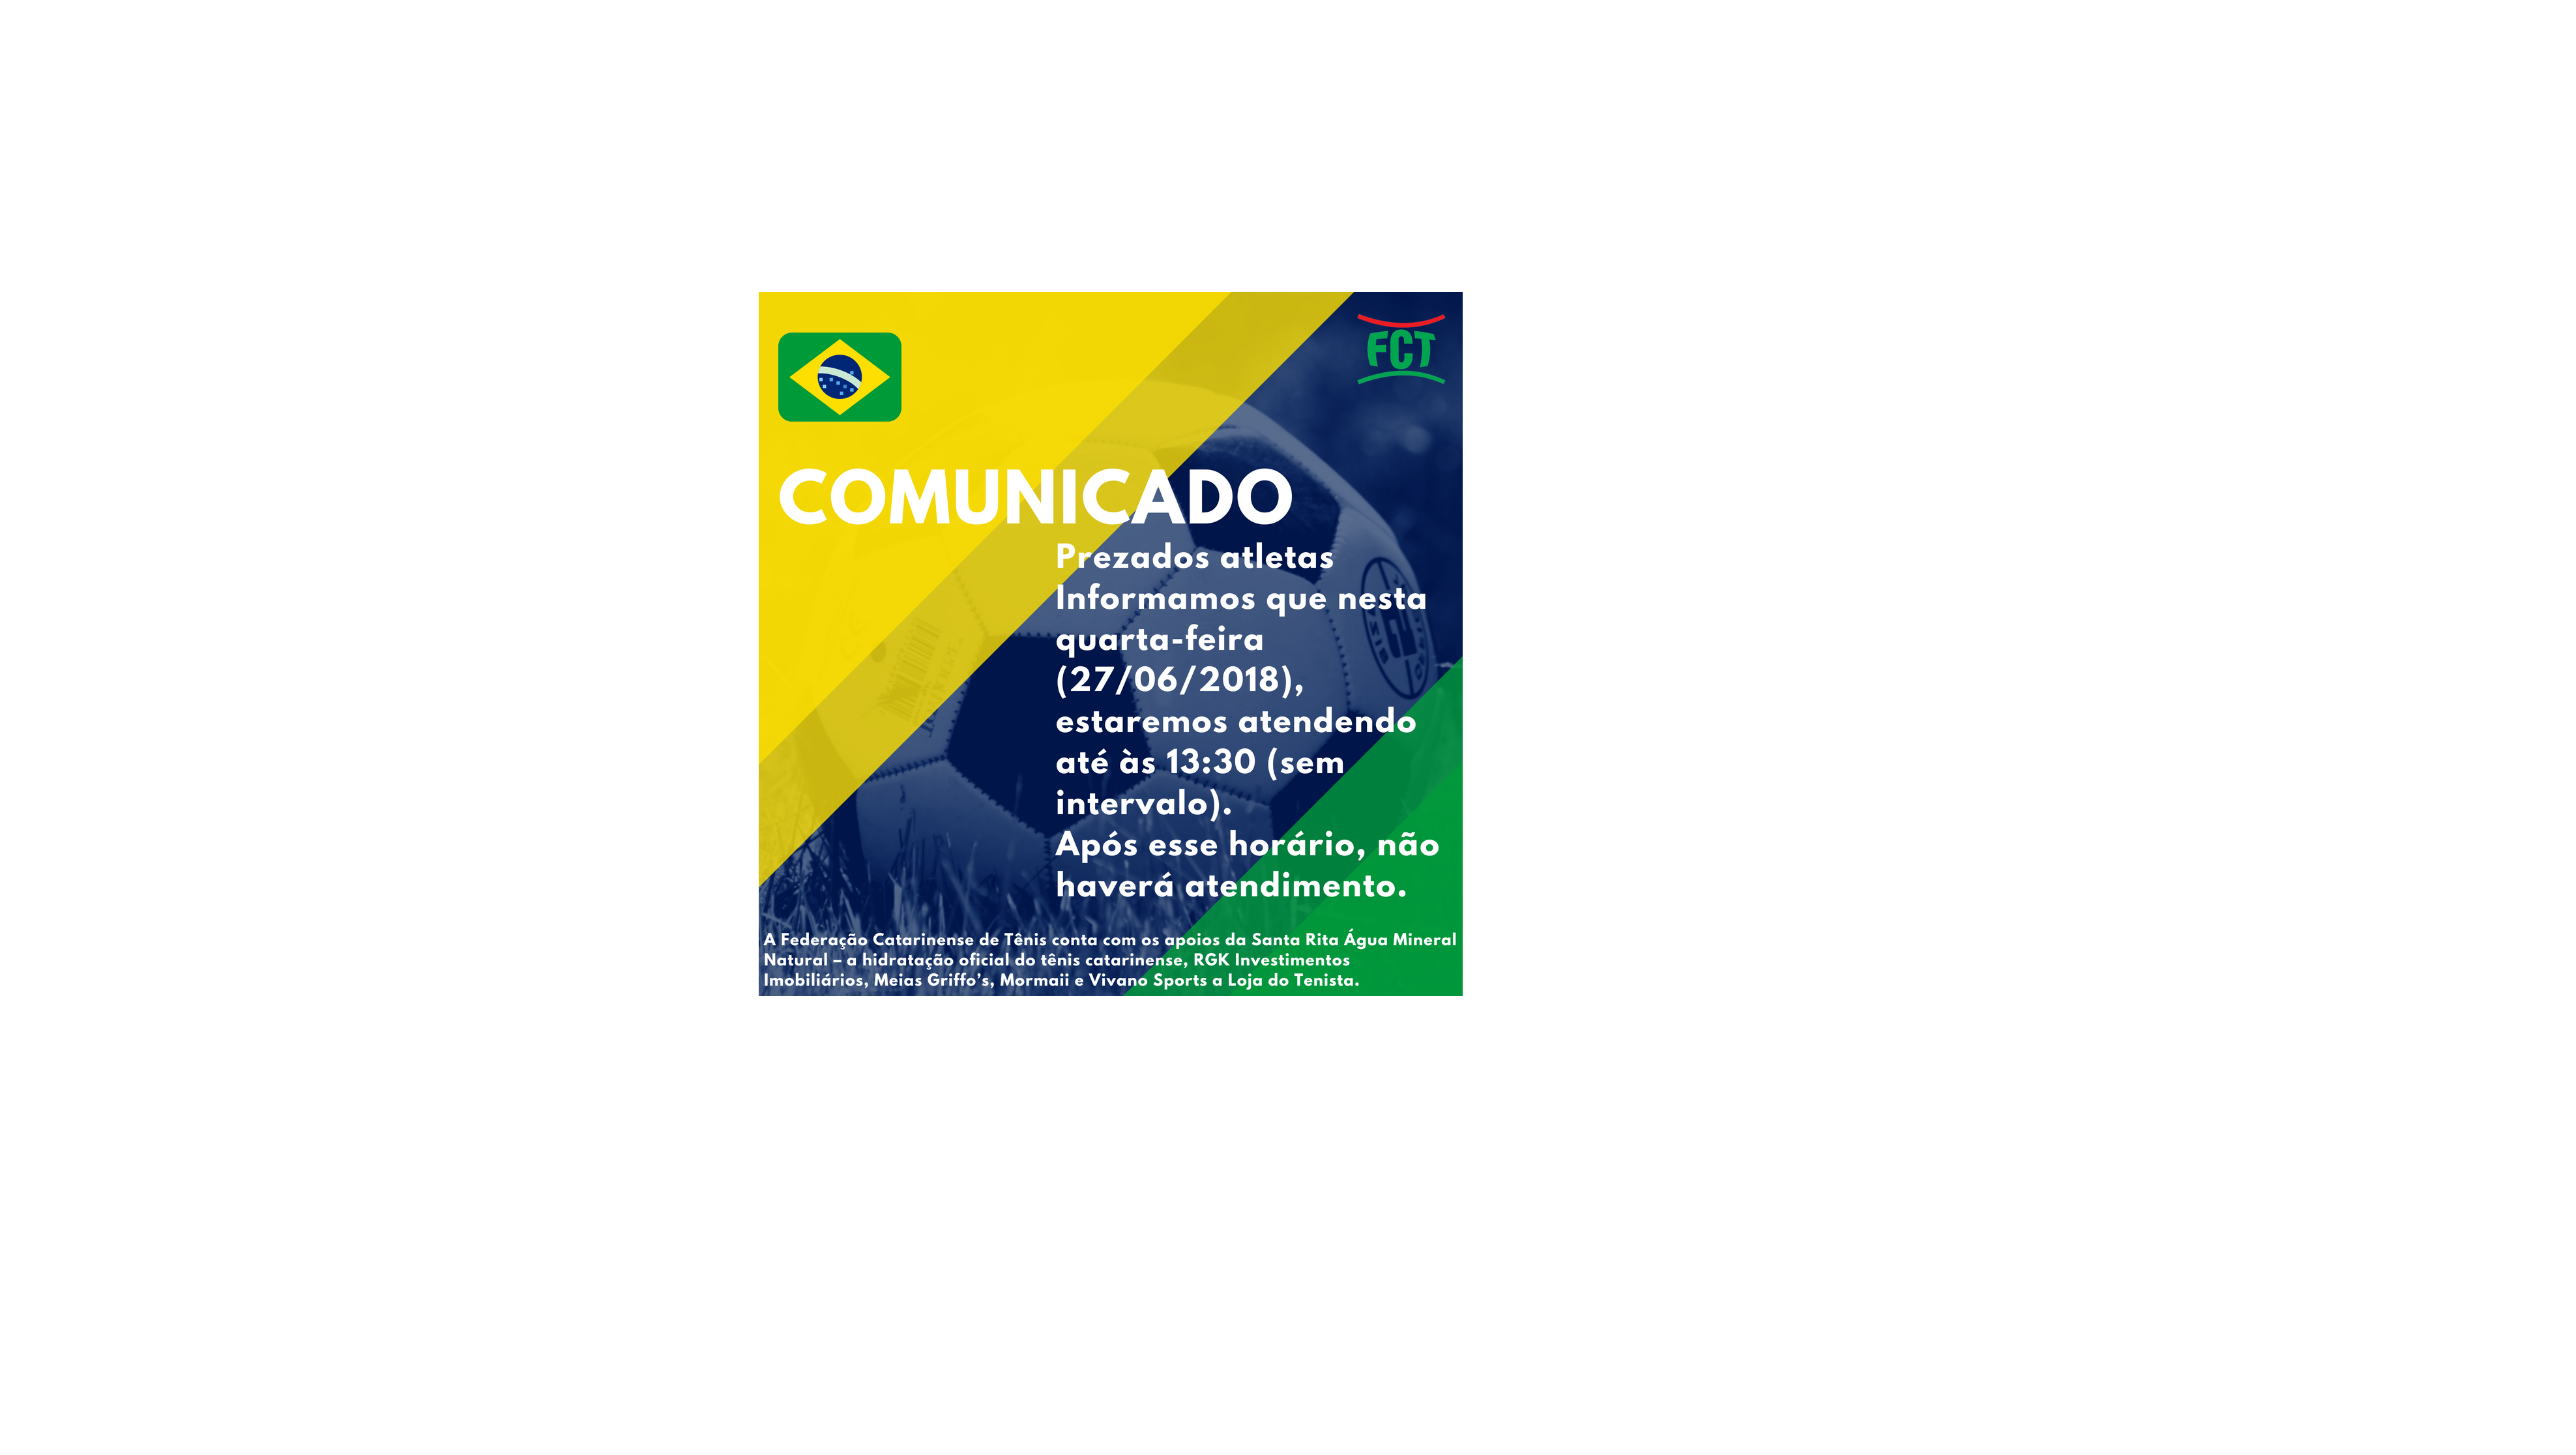 COMUNICADO - EXPEDIENTE - JOGO DO BRASIL QUARTA-FEIRA 27/06/2018